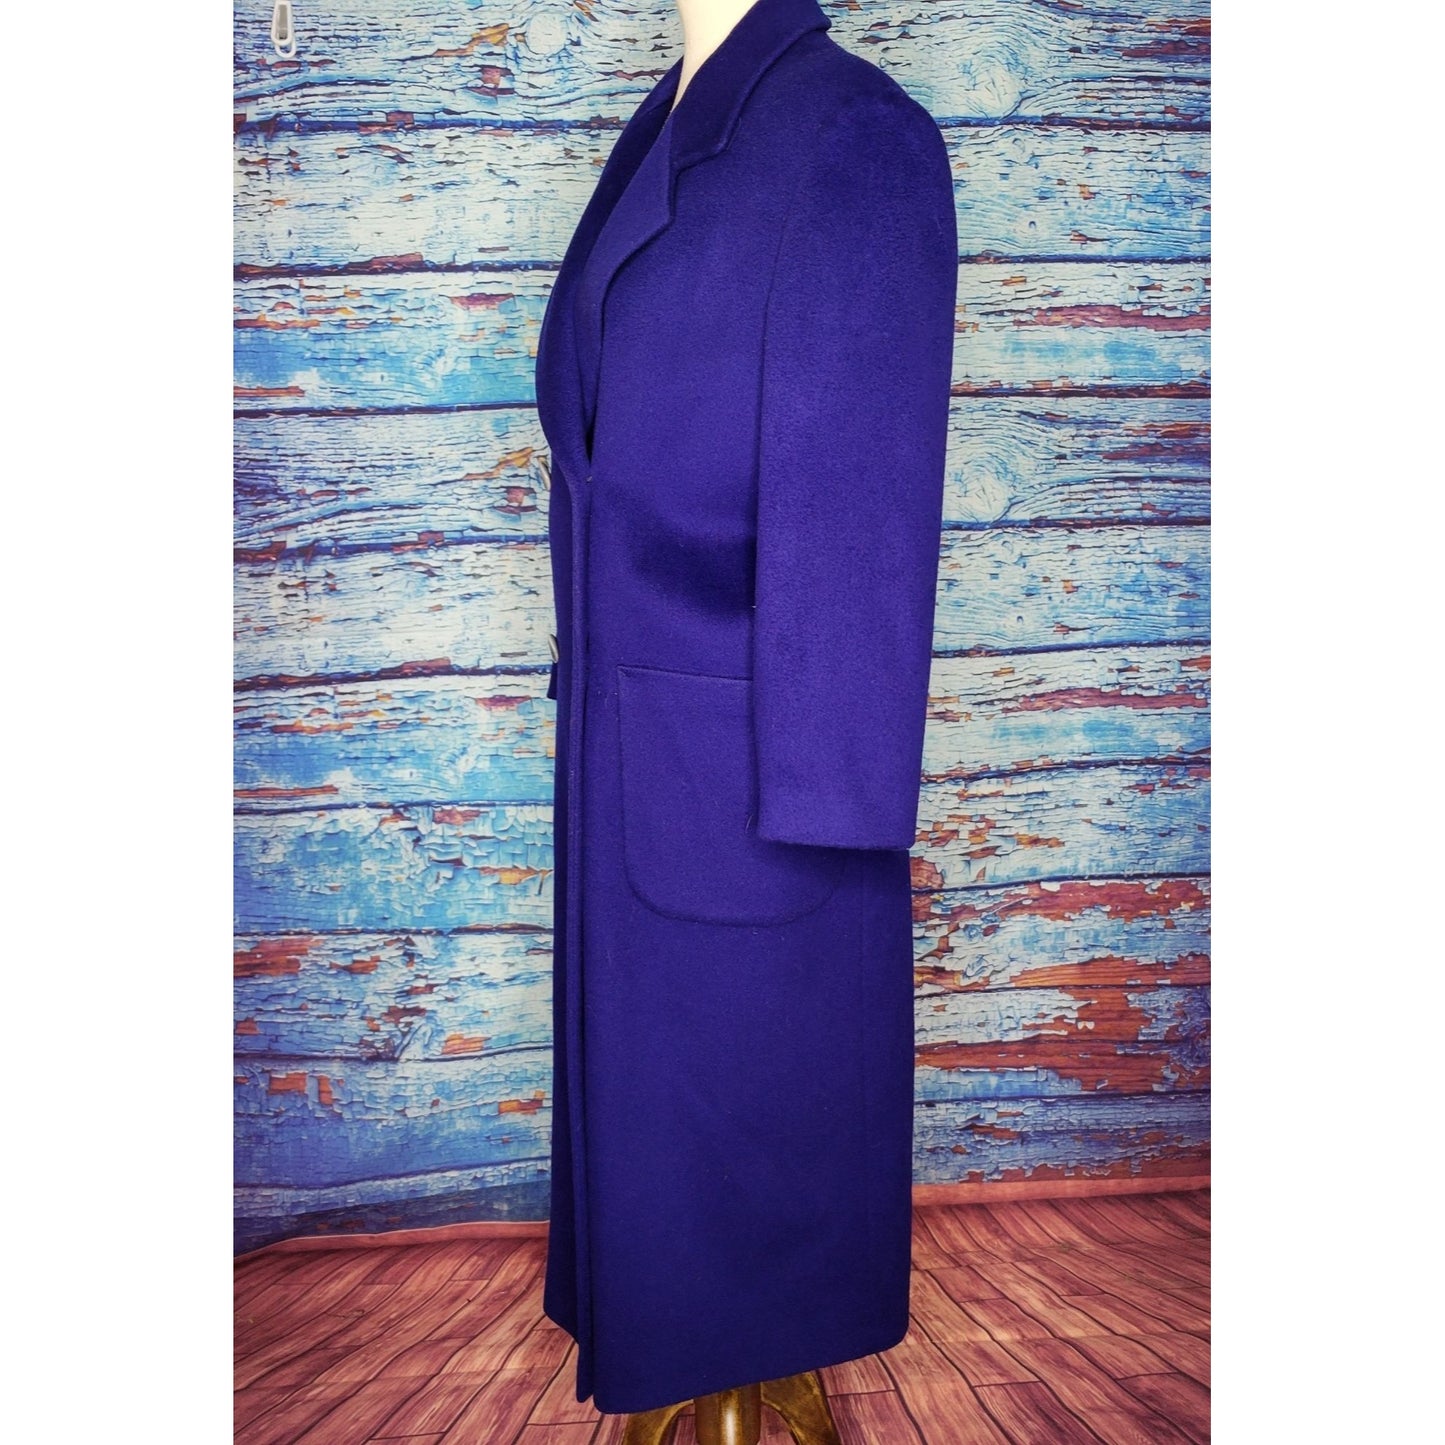 VTG Royal Blue Long Wool Coat by Charter Club